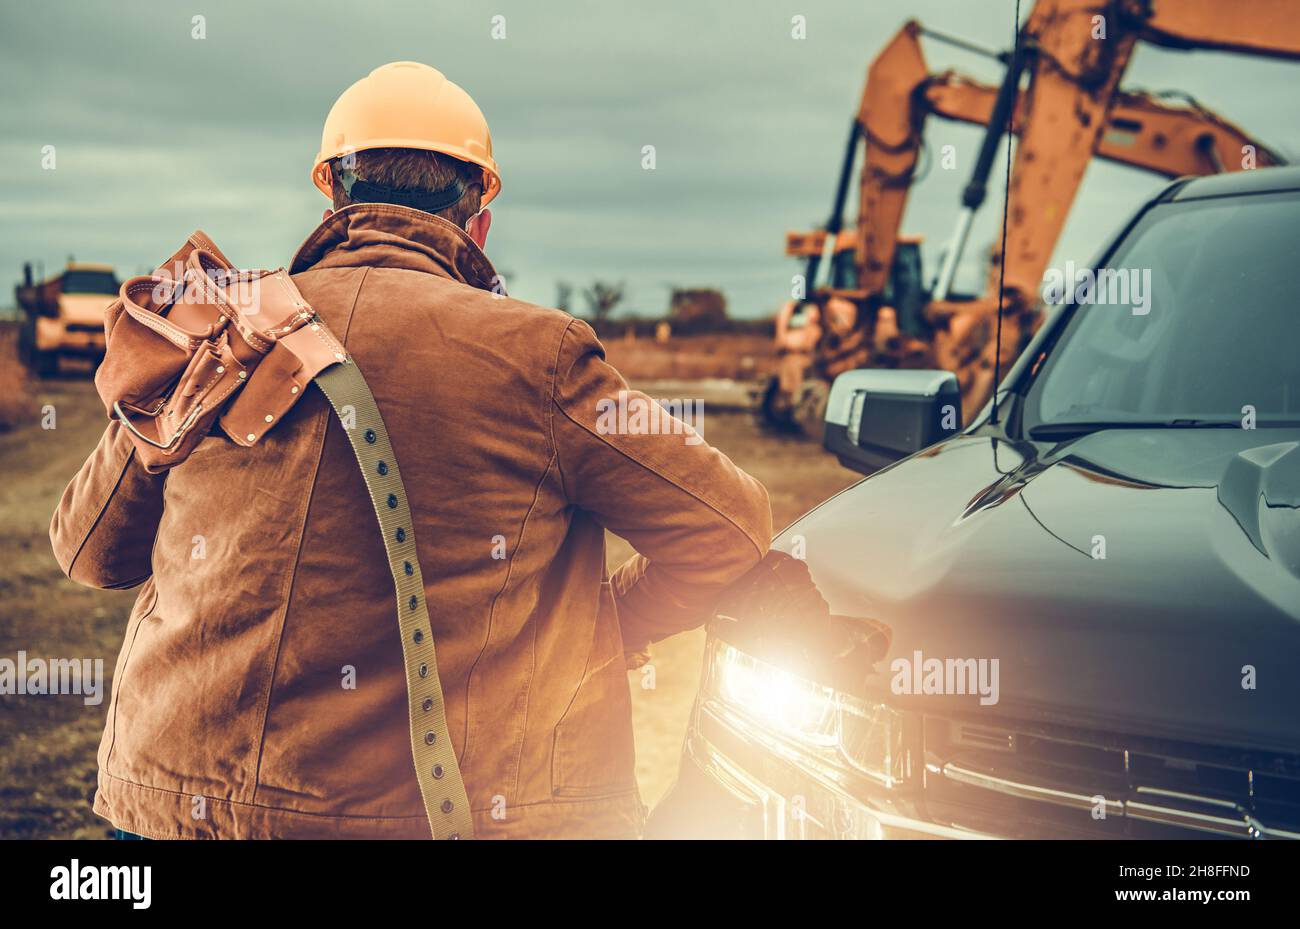 Lavoratore appaltatore con cintura portautensili sulla spalla accanto a camion di raccolta, escavatori e altre attrezzature pesanti in background. Tema industriale. Foto Stock